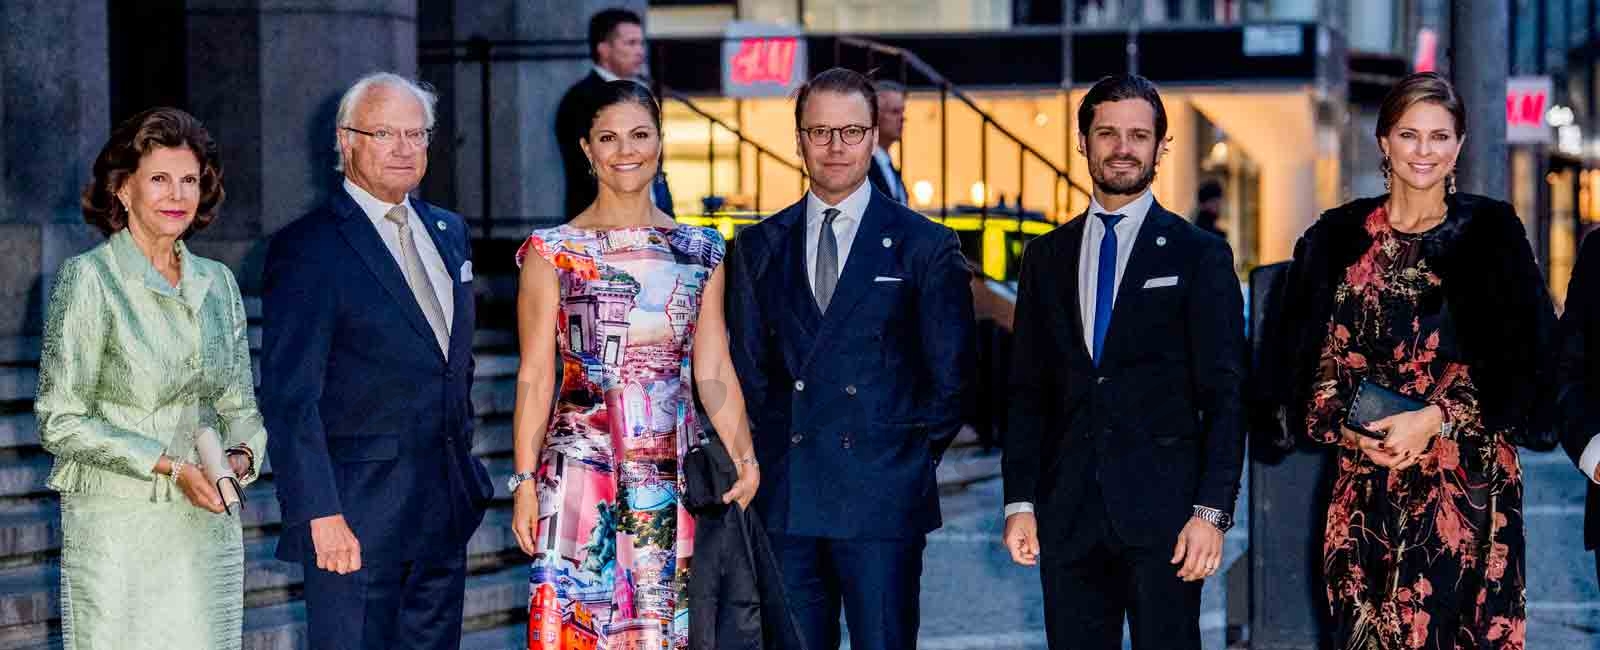 familia real sueca se reune en apertura de su parlamento